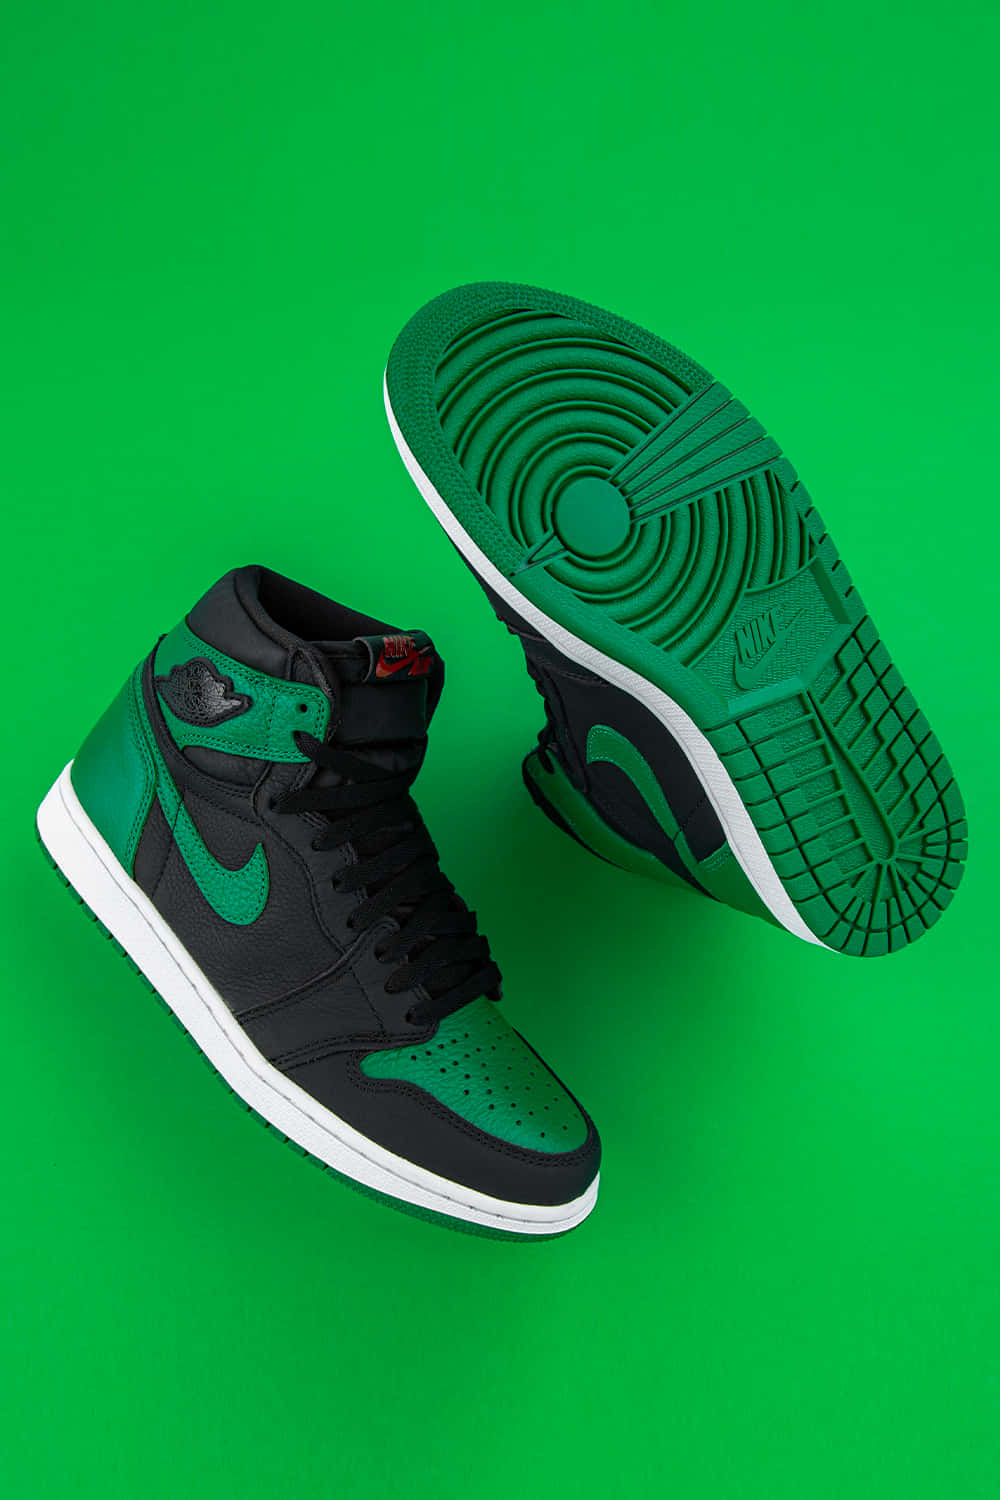 Ikoniske Nike Air Jordan sko Wallpaper